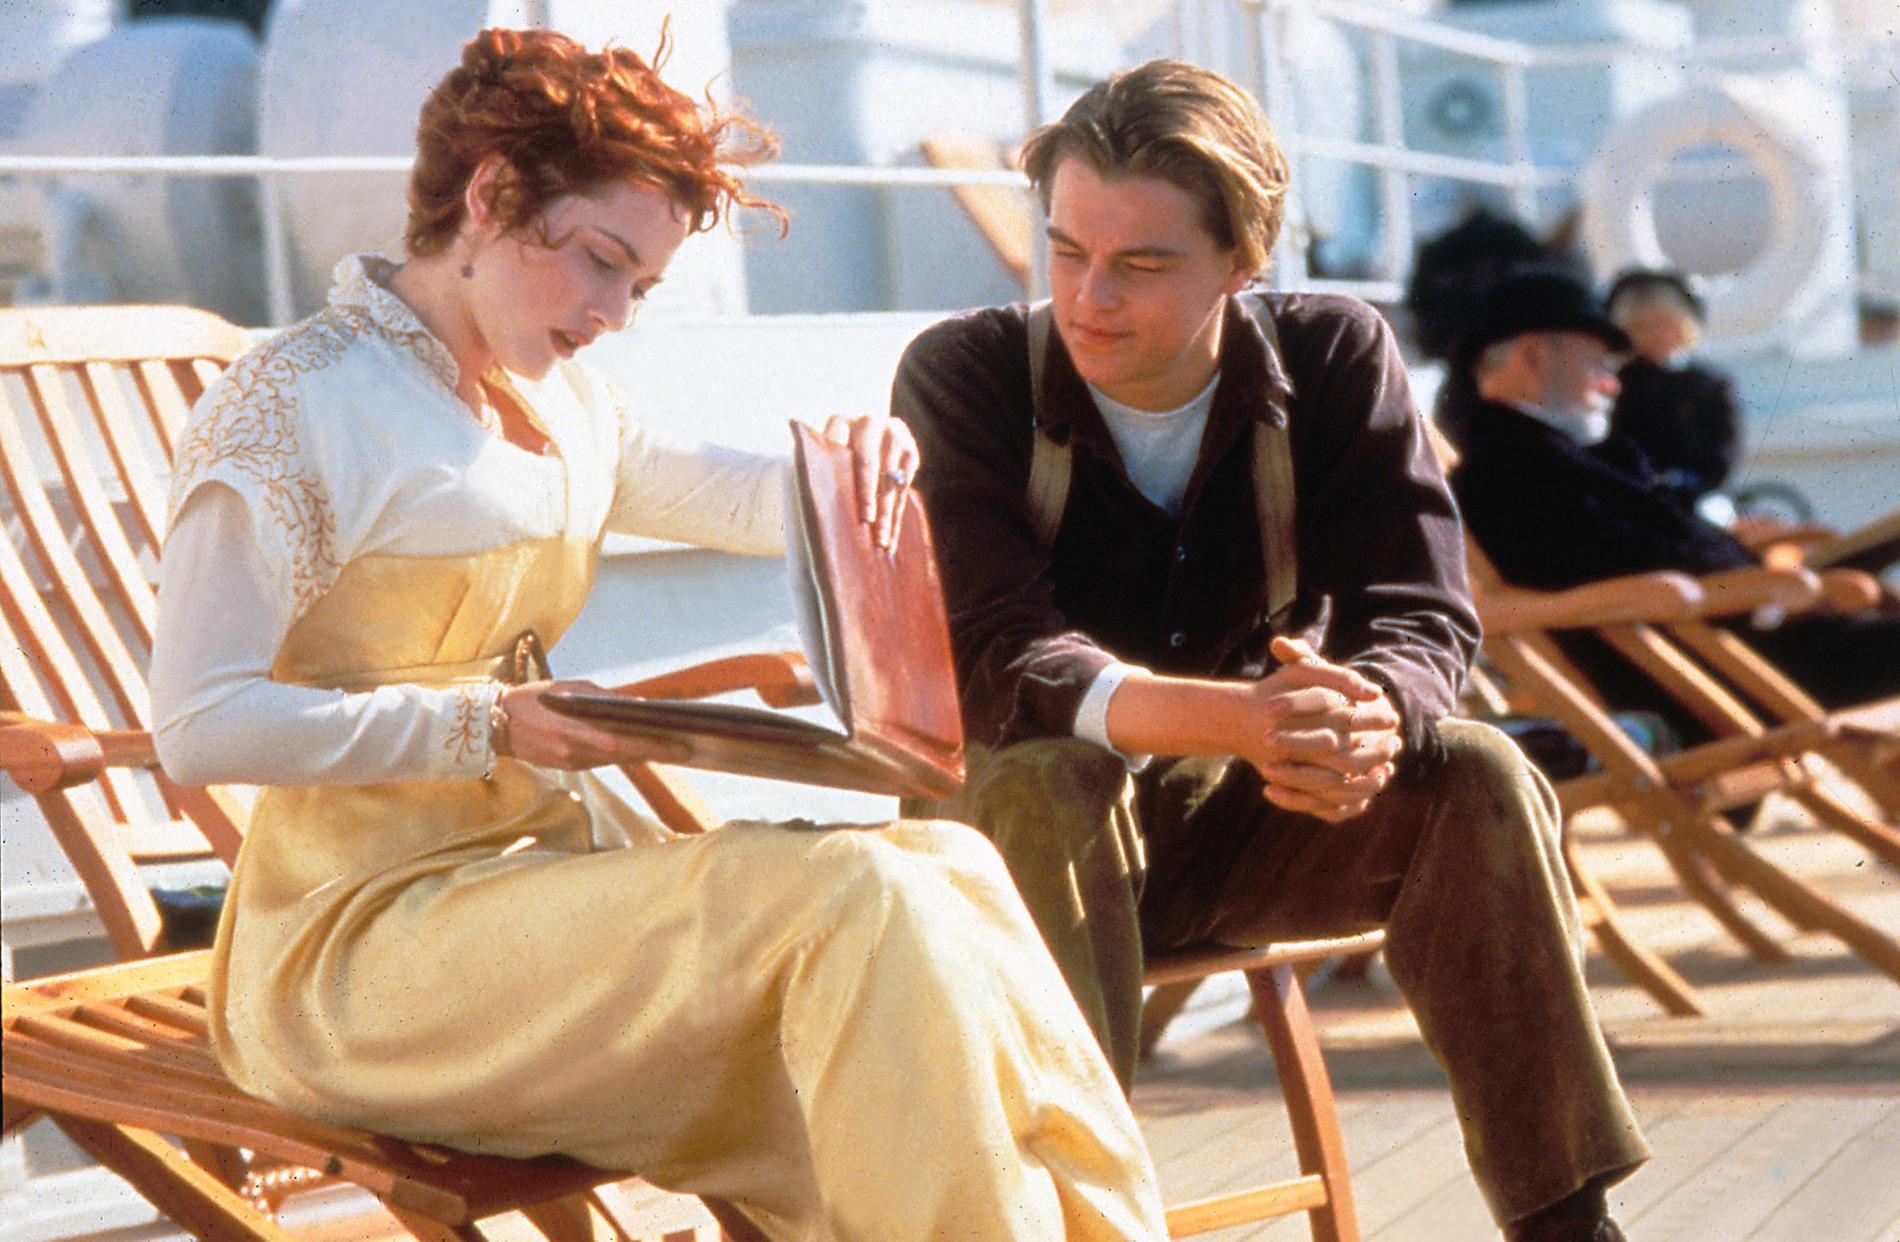 I ”Titanic” spelar Kate och Leonardo kärleksparet Rose och Jack.